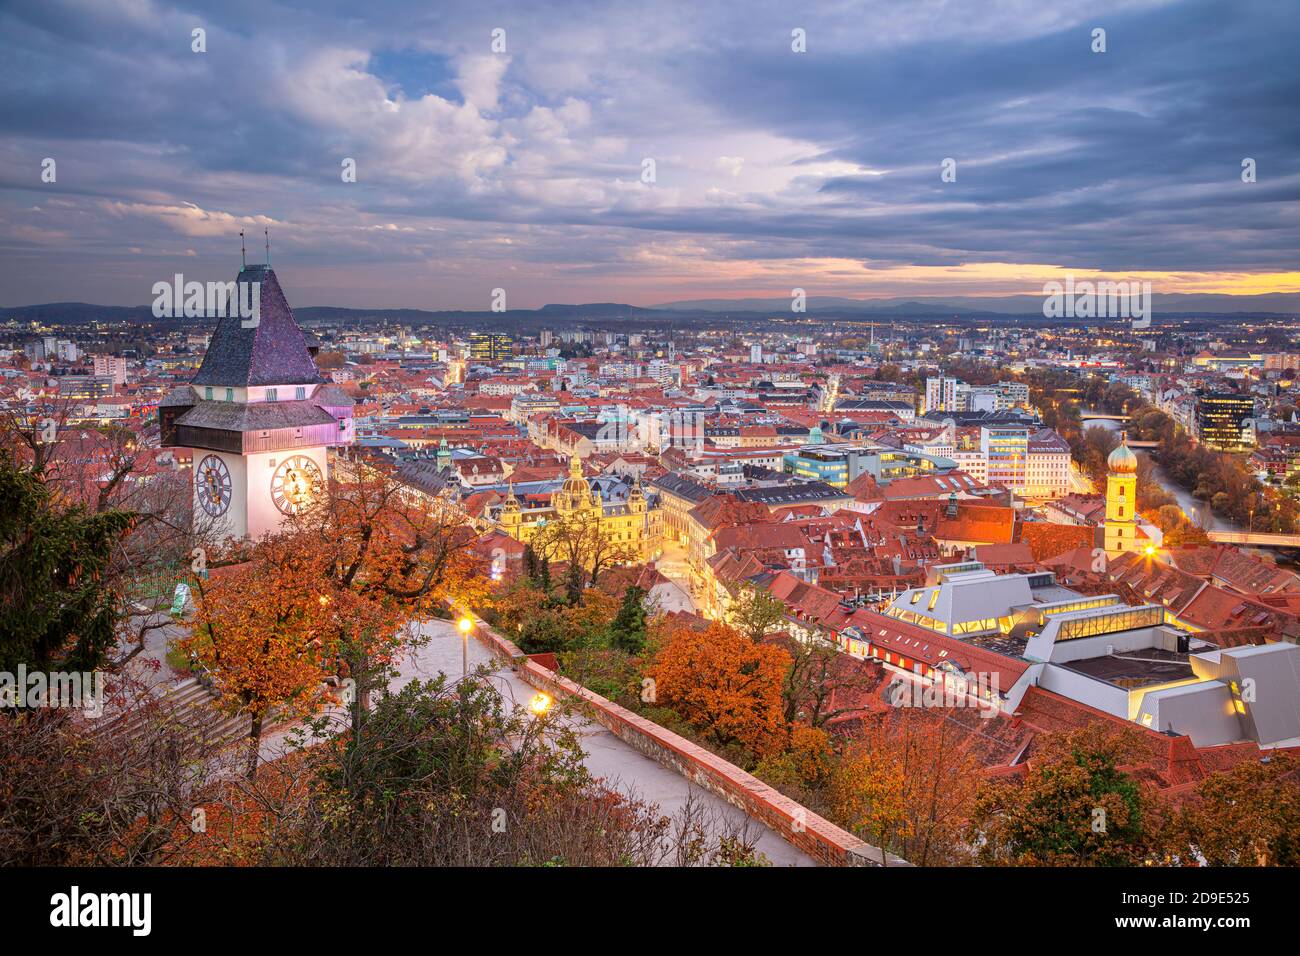 Graz, Autriche. Image du paysage urbain de Graz, Autriche avec la Tour de l'horloge au beau coucher du soleil d'automne. Banque D'Images